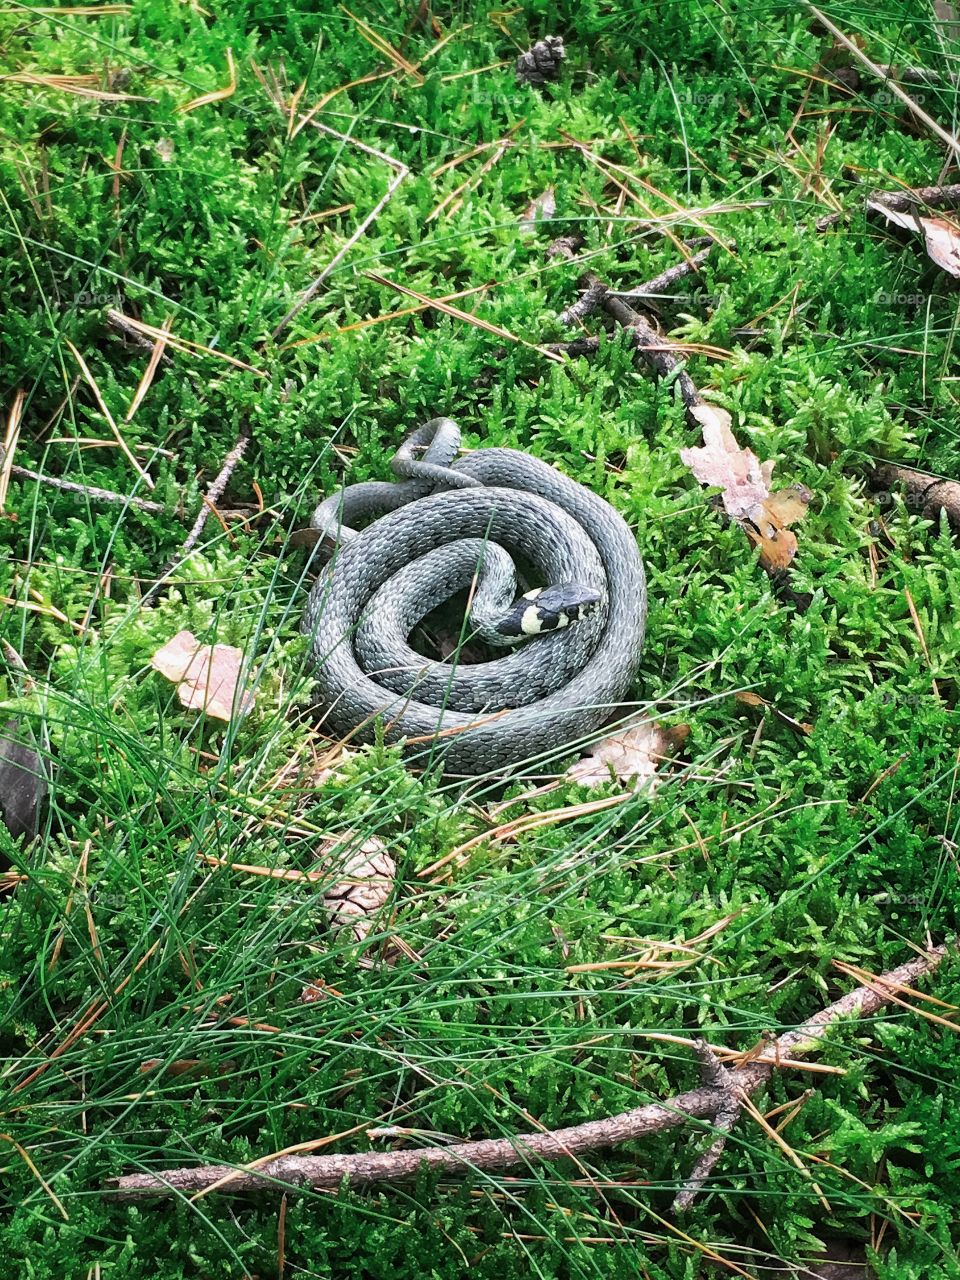 Snake in grass
